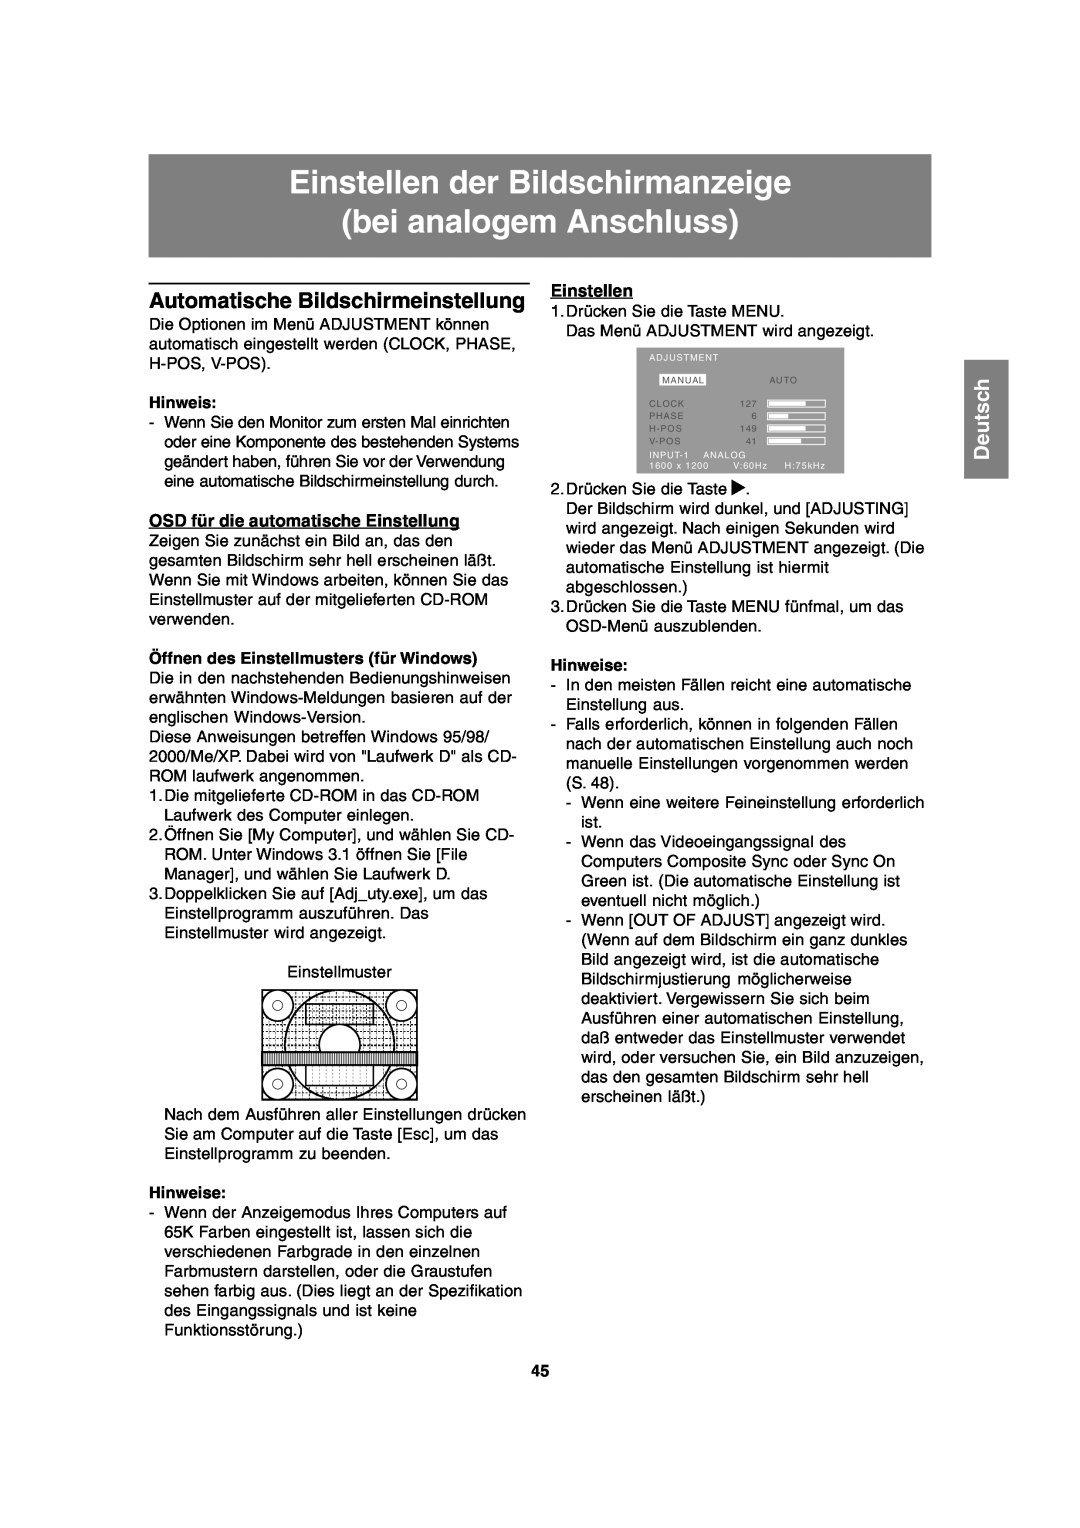 Sharp LL-T2020 Einstellen der Bildschirmanzeige bei analogem Anschluss, Automatische Bildschirmeinstellung, Deutsch 